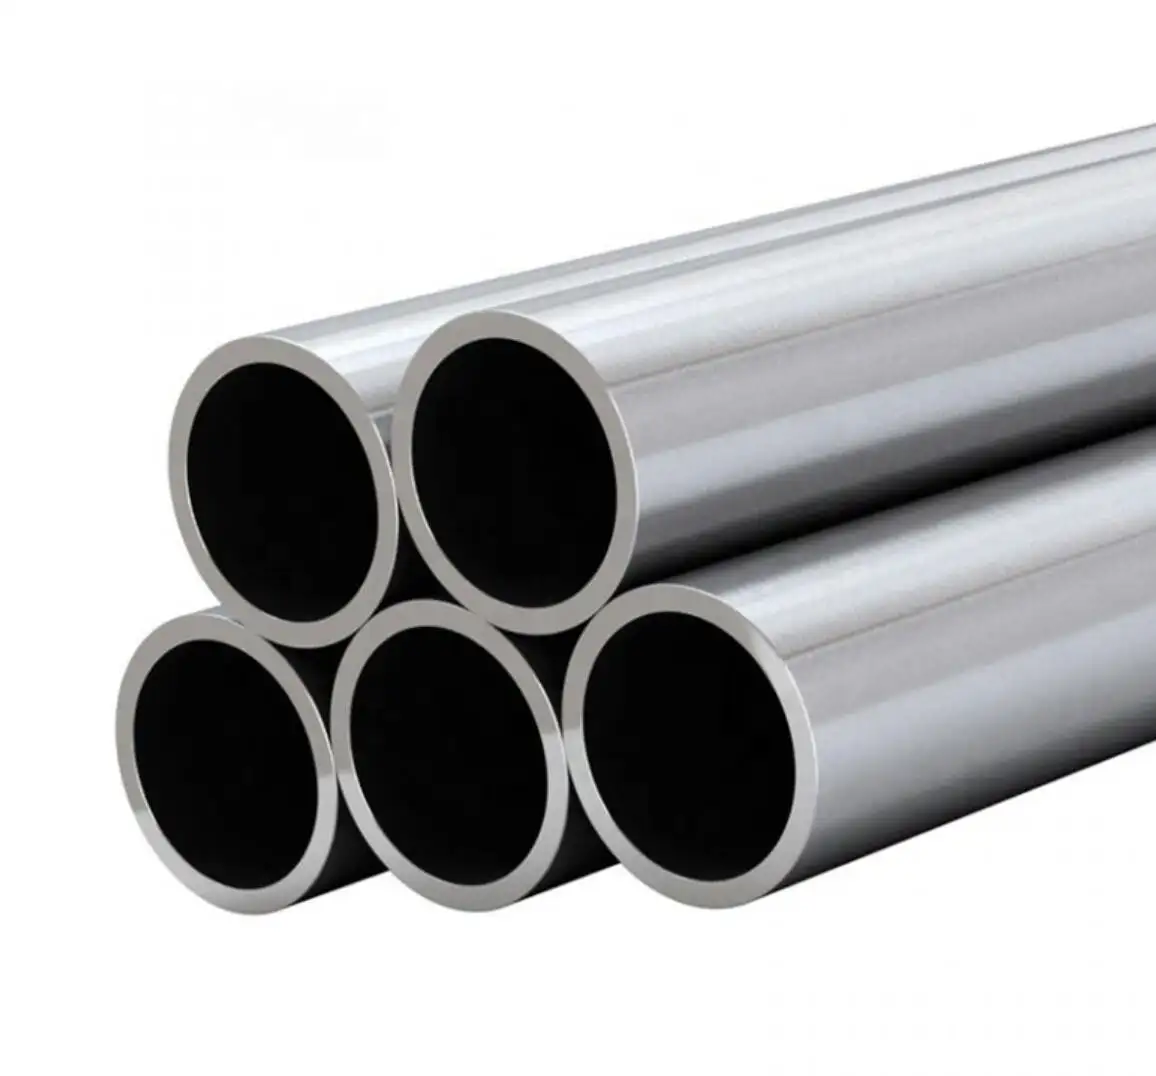 Round Tubes ASTMB338 Industrial Titanium Titanium Alloy Seamless Steel Pipe Round & Square Seamless Titanium Tubing Gr2 10kg